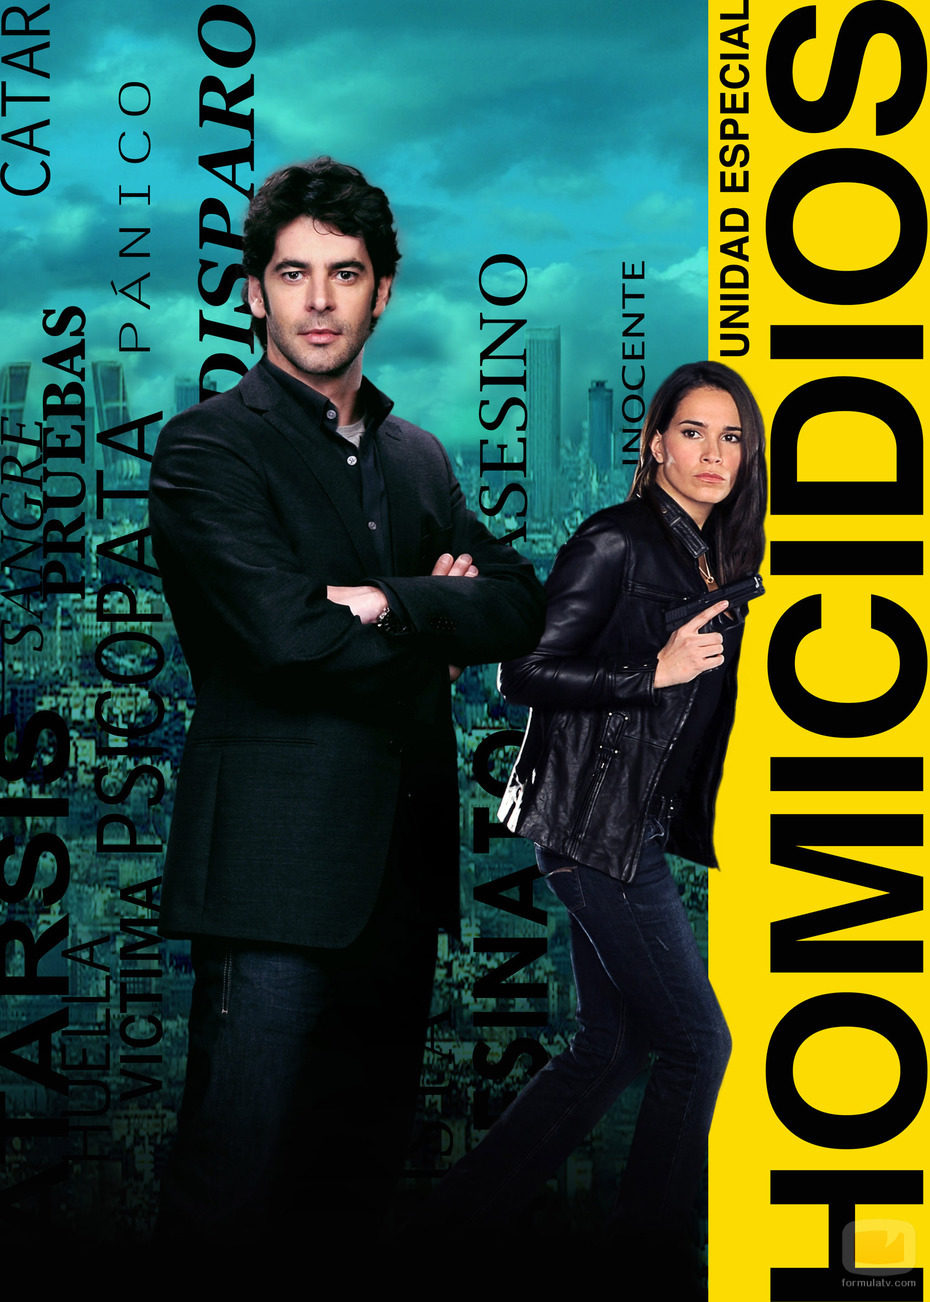 Eduardo Noriega y Celia Freijeiro protagonizan 'Homicidios'